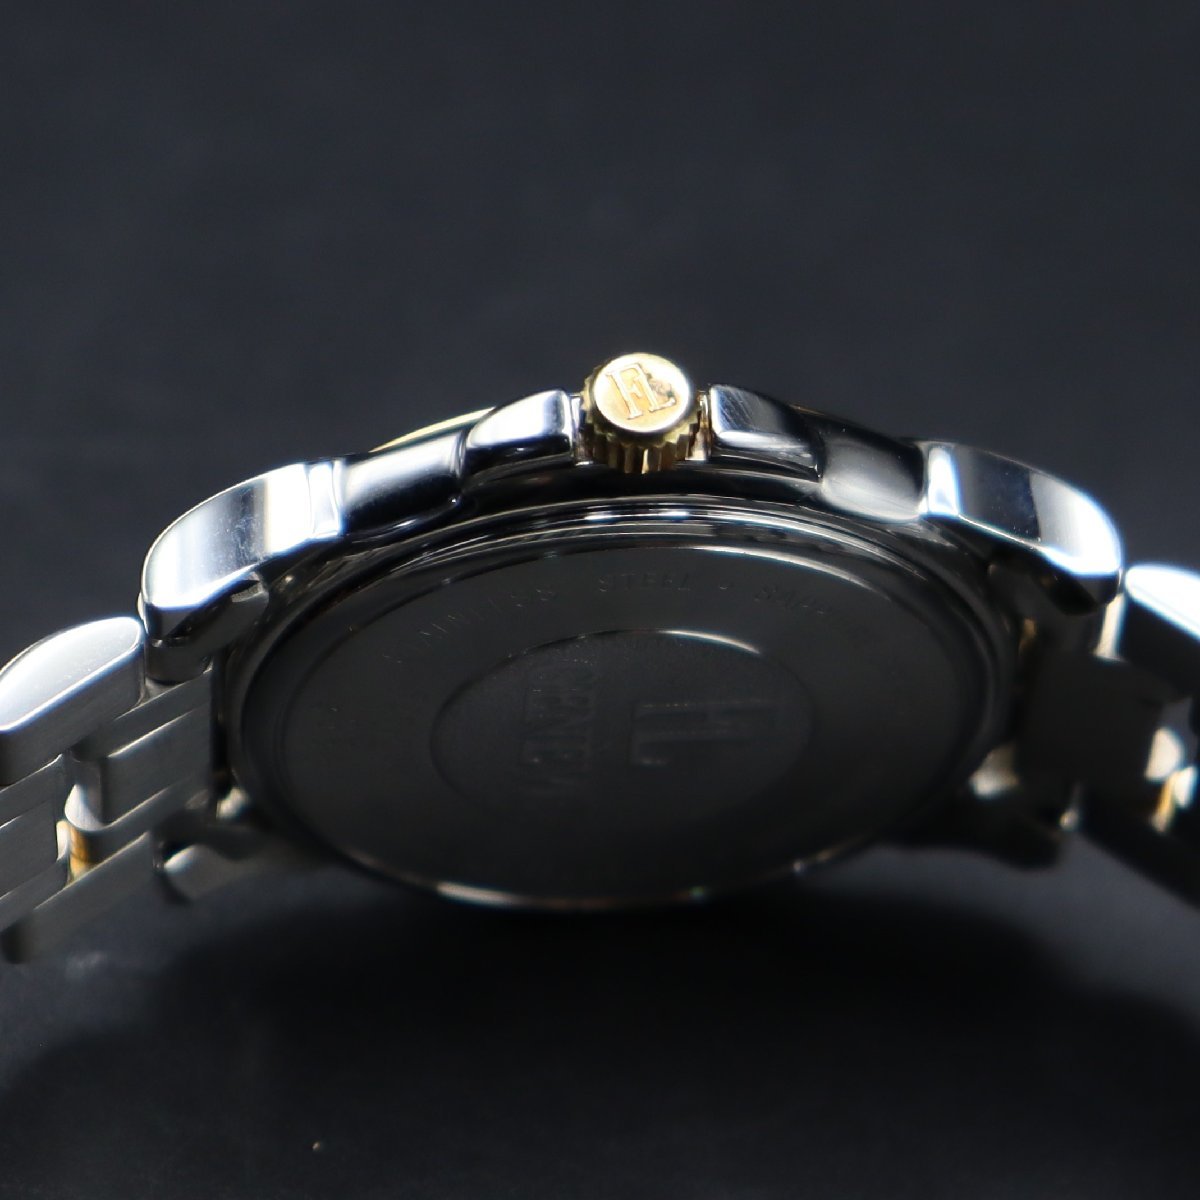 良品 FAVRE-LEUBA ファーブル ルーバ ジュネーブ F25-200 クォーツ コンビカラー デイト スイス製 純正ブレス 国際保証書/箱 メンズ腕時計_画像7